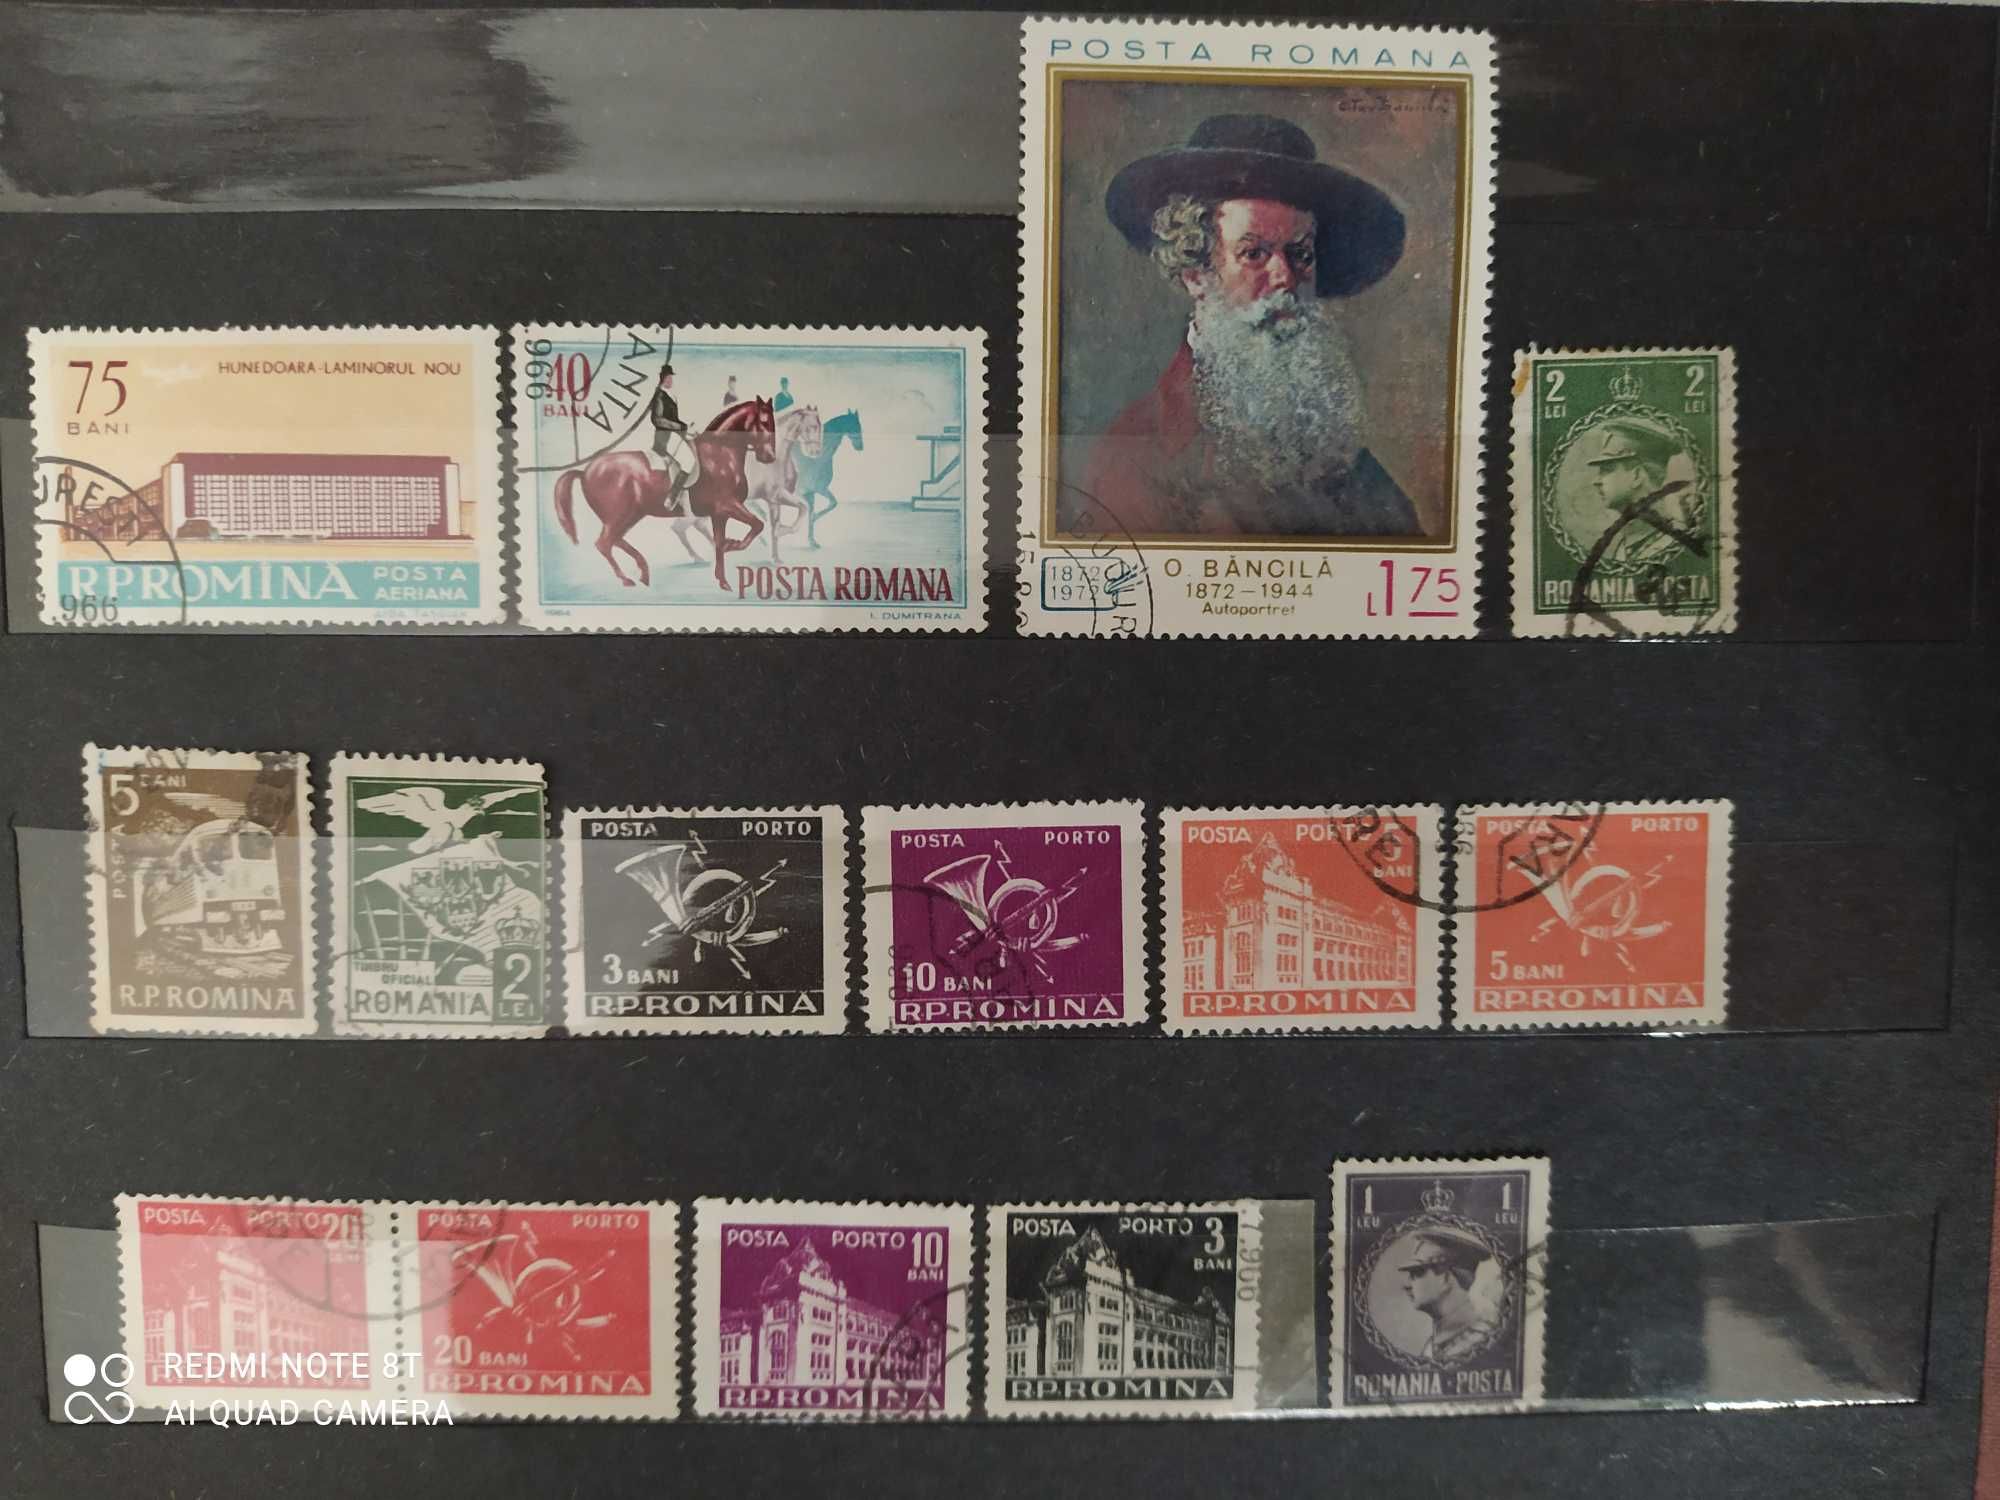 Rumunnia znaczki do uzupełnienia kolekcji